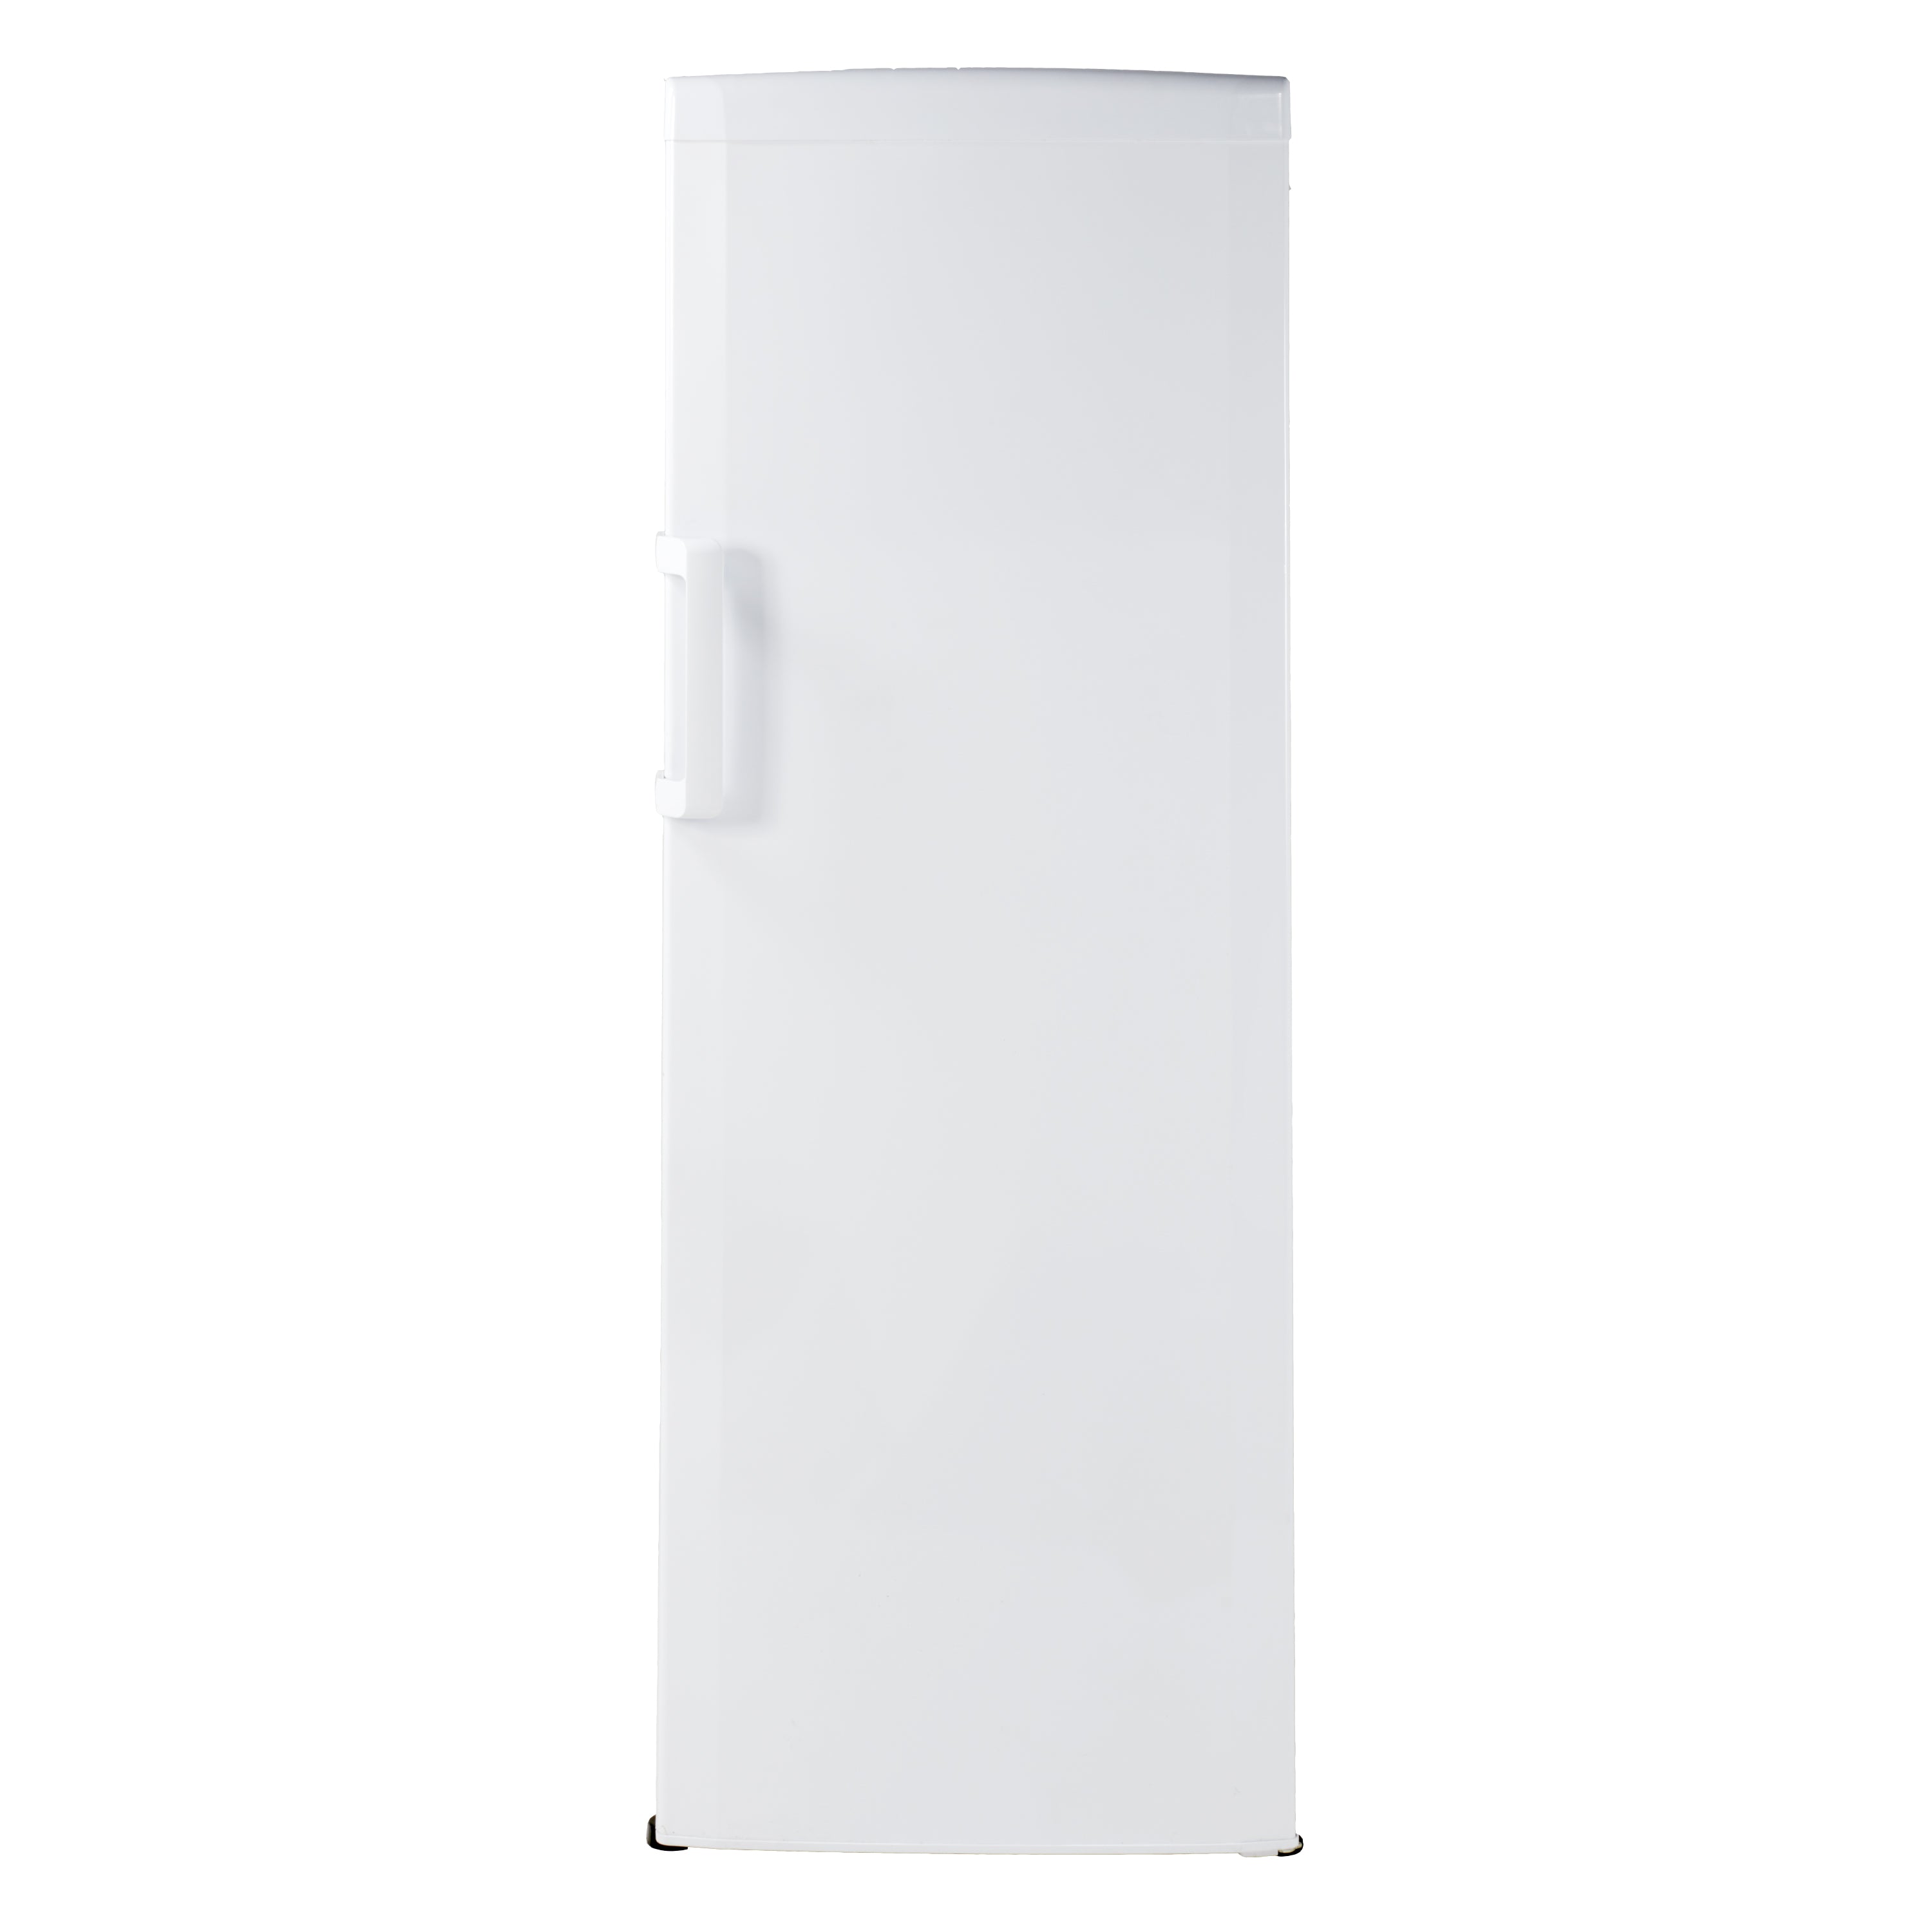 Avanti - VF93Q0W, Avanti 9.3 cu. ft. Vertical Freezer, in White